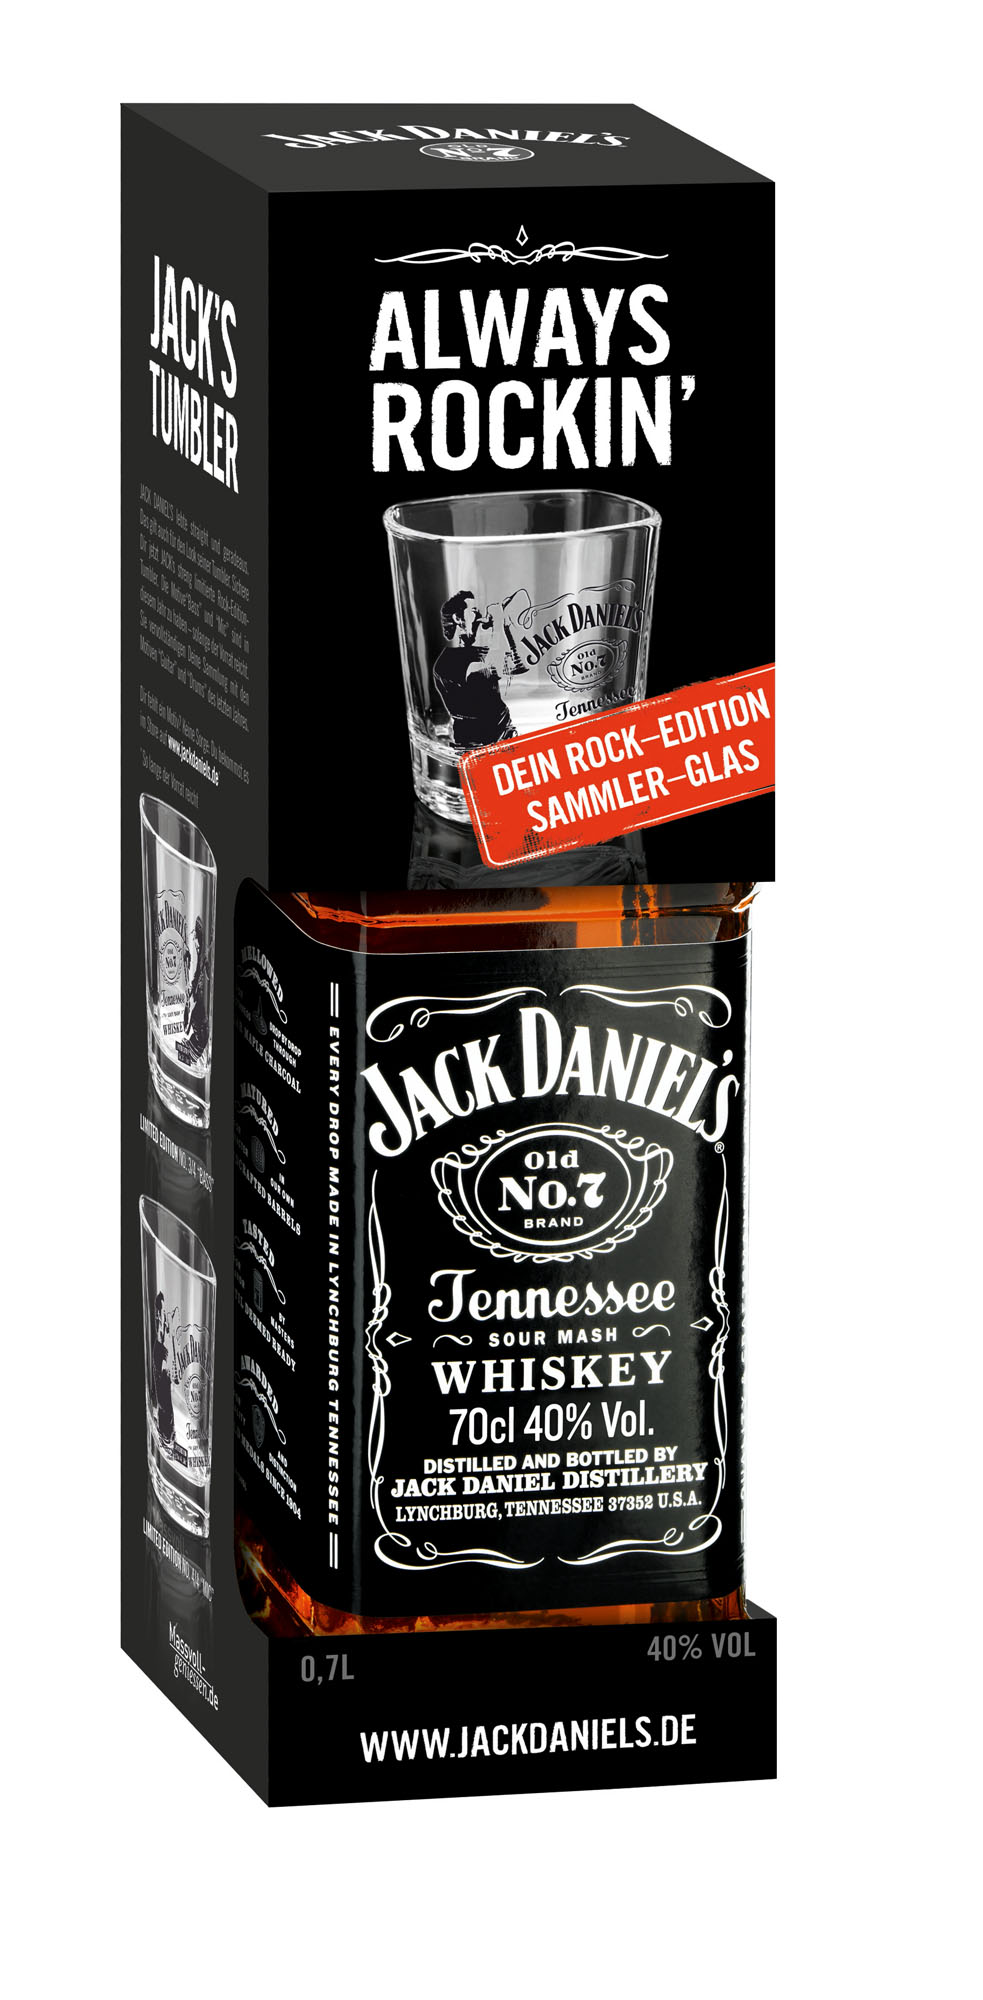 geeuwen Kaal moeder News: Jack Daniel's Old No. 7 erhält zweite Rock-Edition mit Tumbler-Glas –  Spirituosen-Journal.de